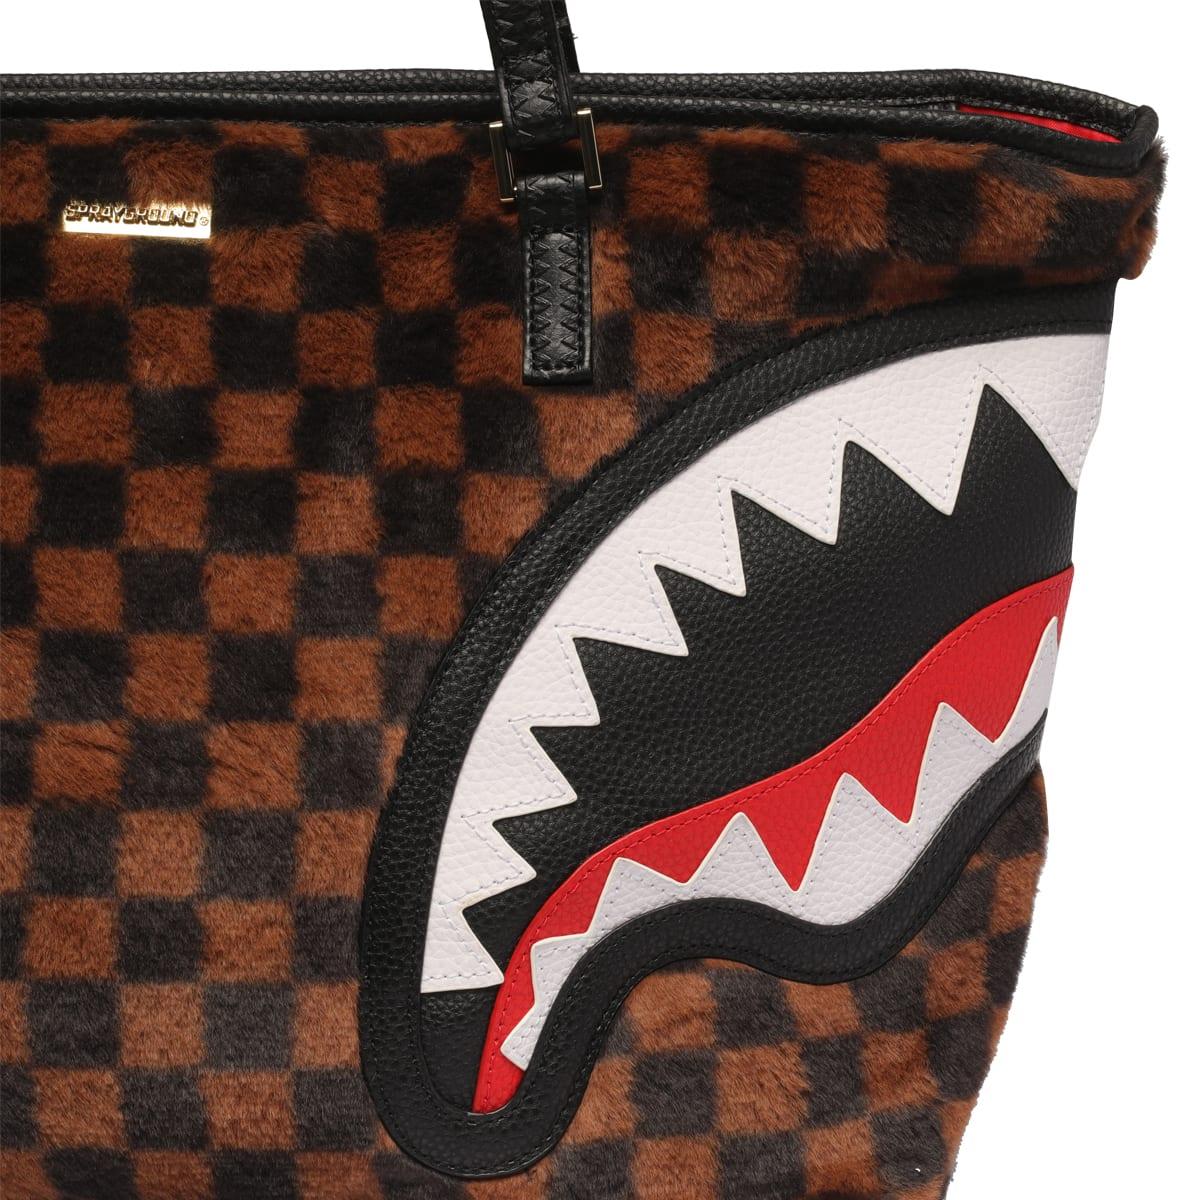 SPRAYGROUND: Fur Sharks in Paris Checkered Backpack